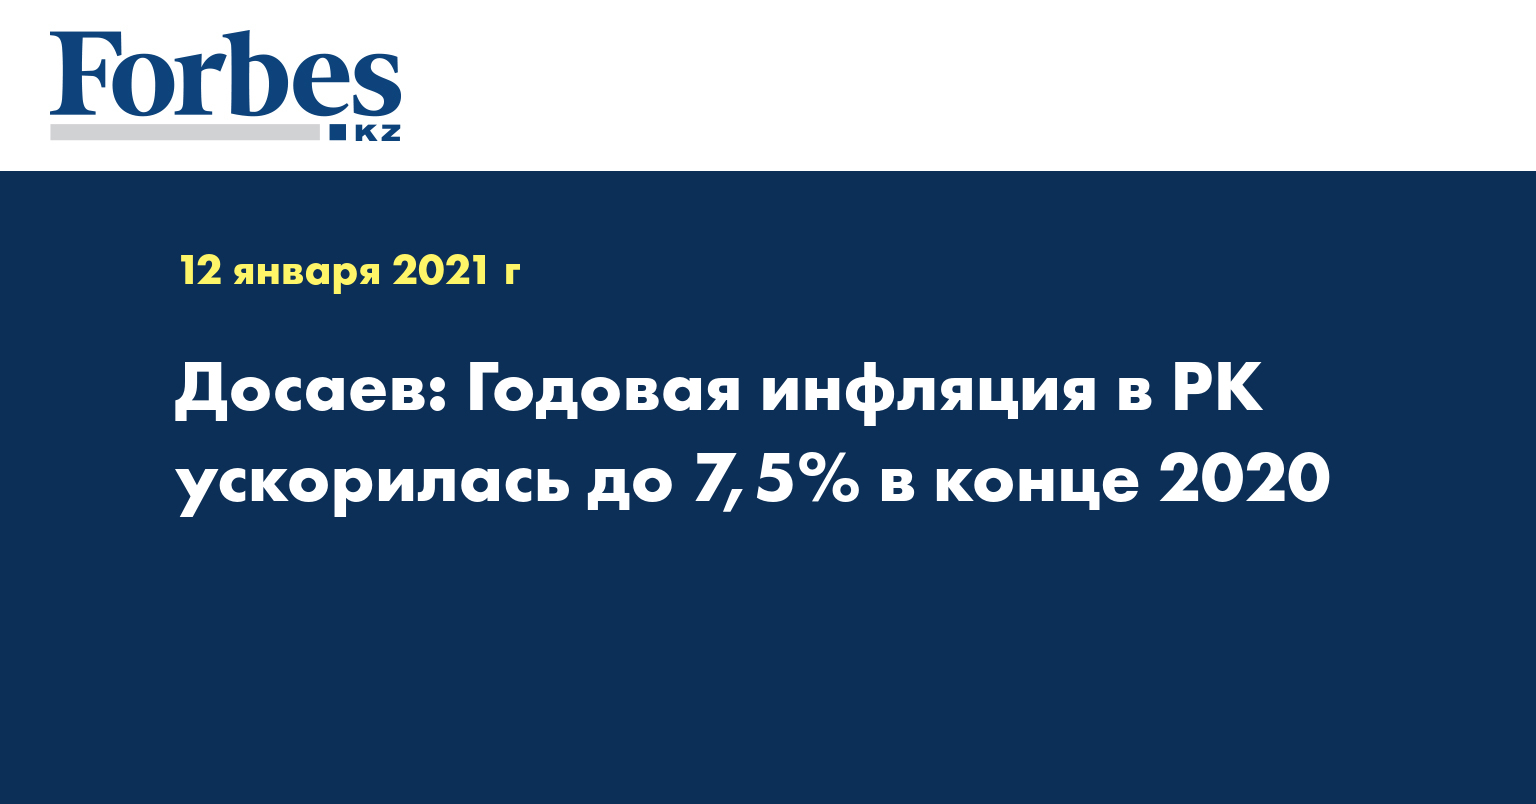 Досаев: Годовая инфляция в РК ускорилась до 7,5% в конце 2020